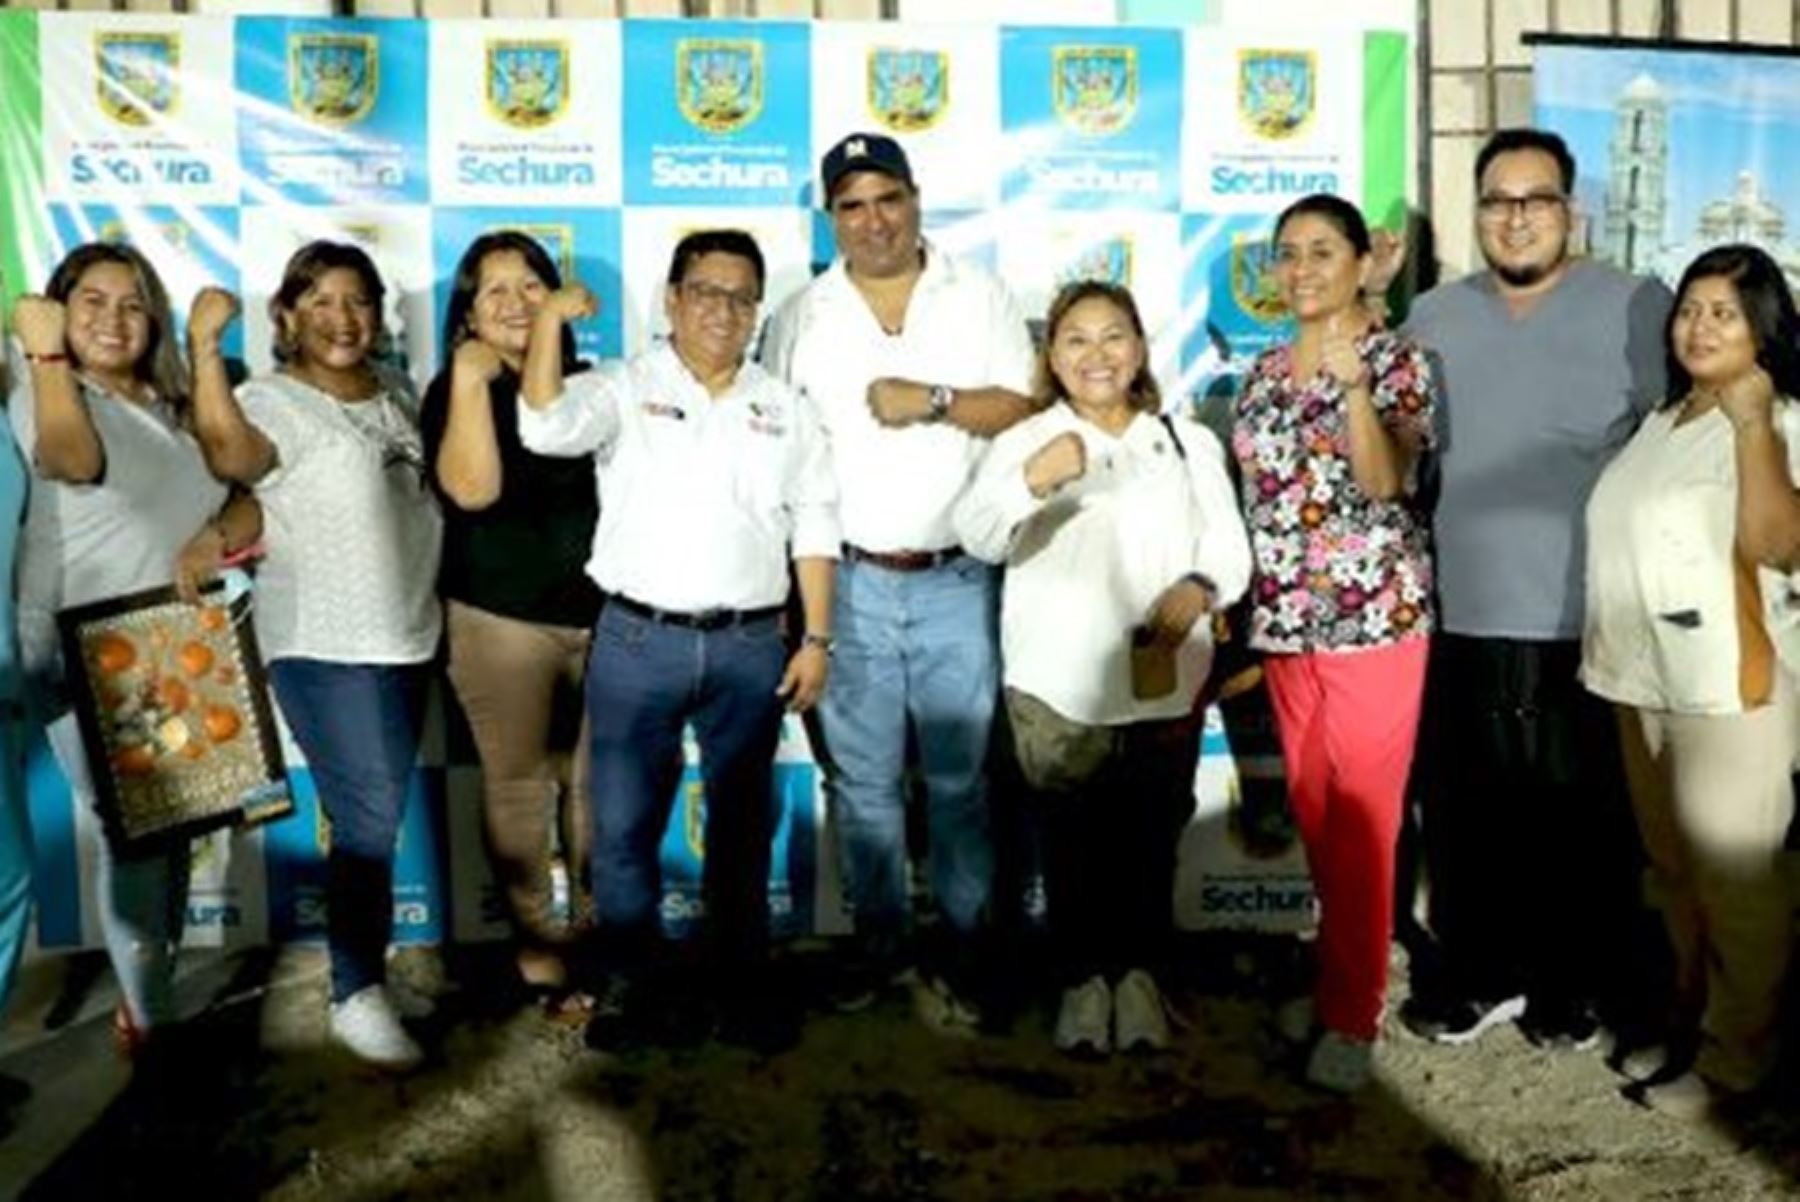 El ministro de Salud, César Vásquez, llegó al distrito de Bernal, provincia de Sechura, región Piura, para anunciar que el Centro de Salud I-4 Bernal será incluido dentro del Plan 1000.